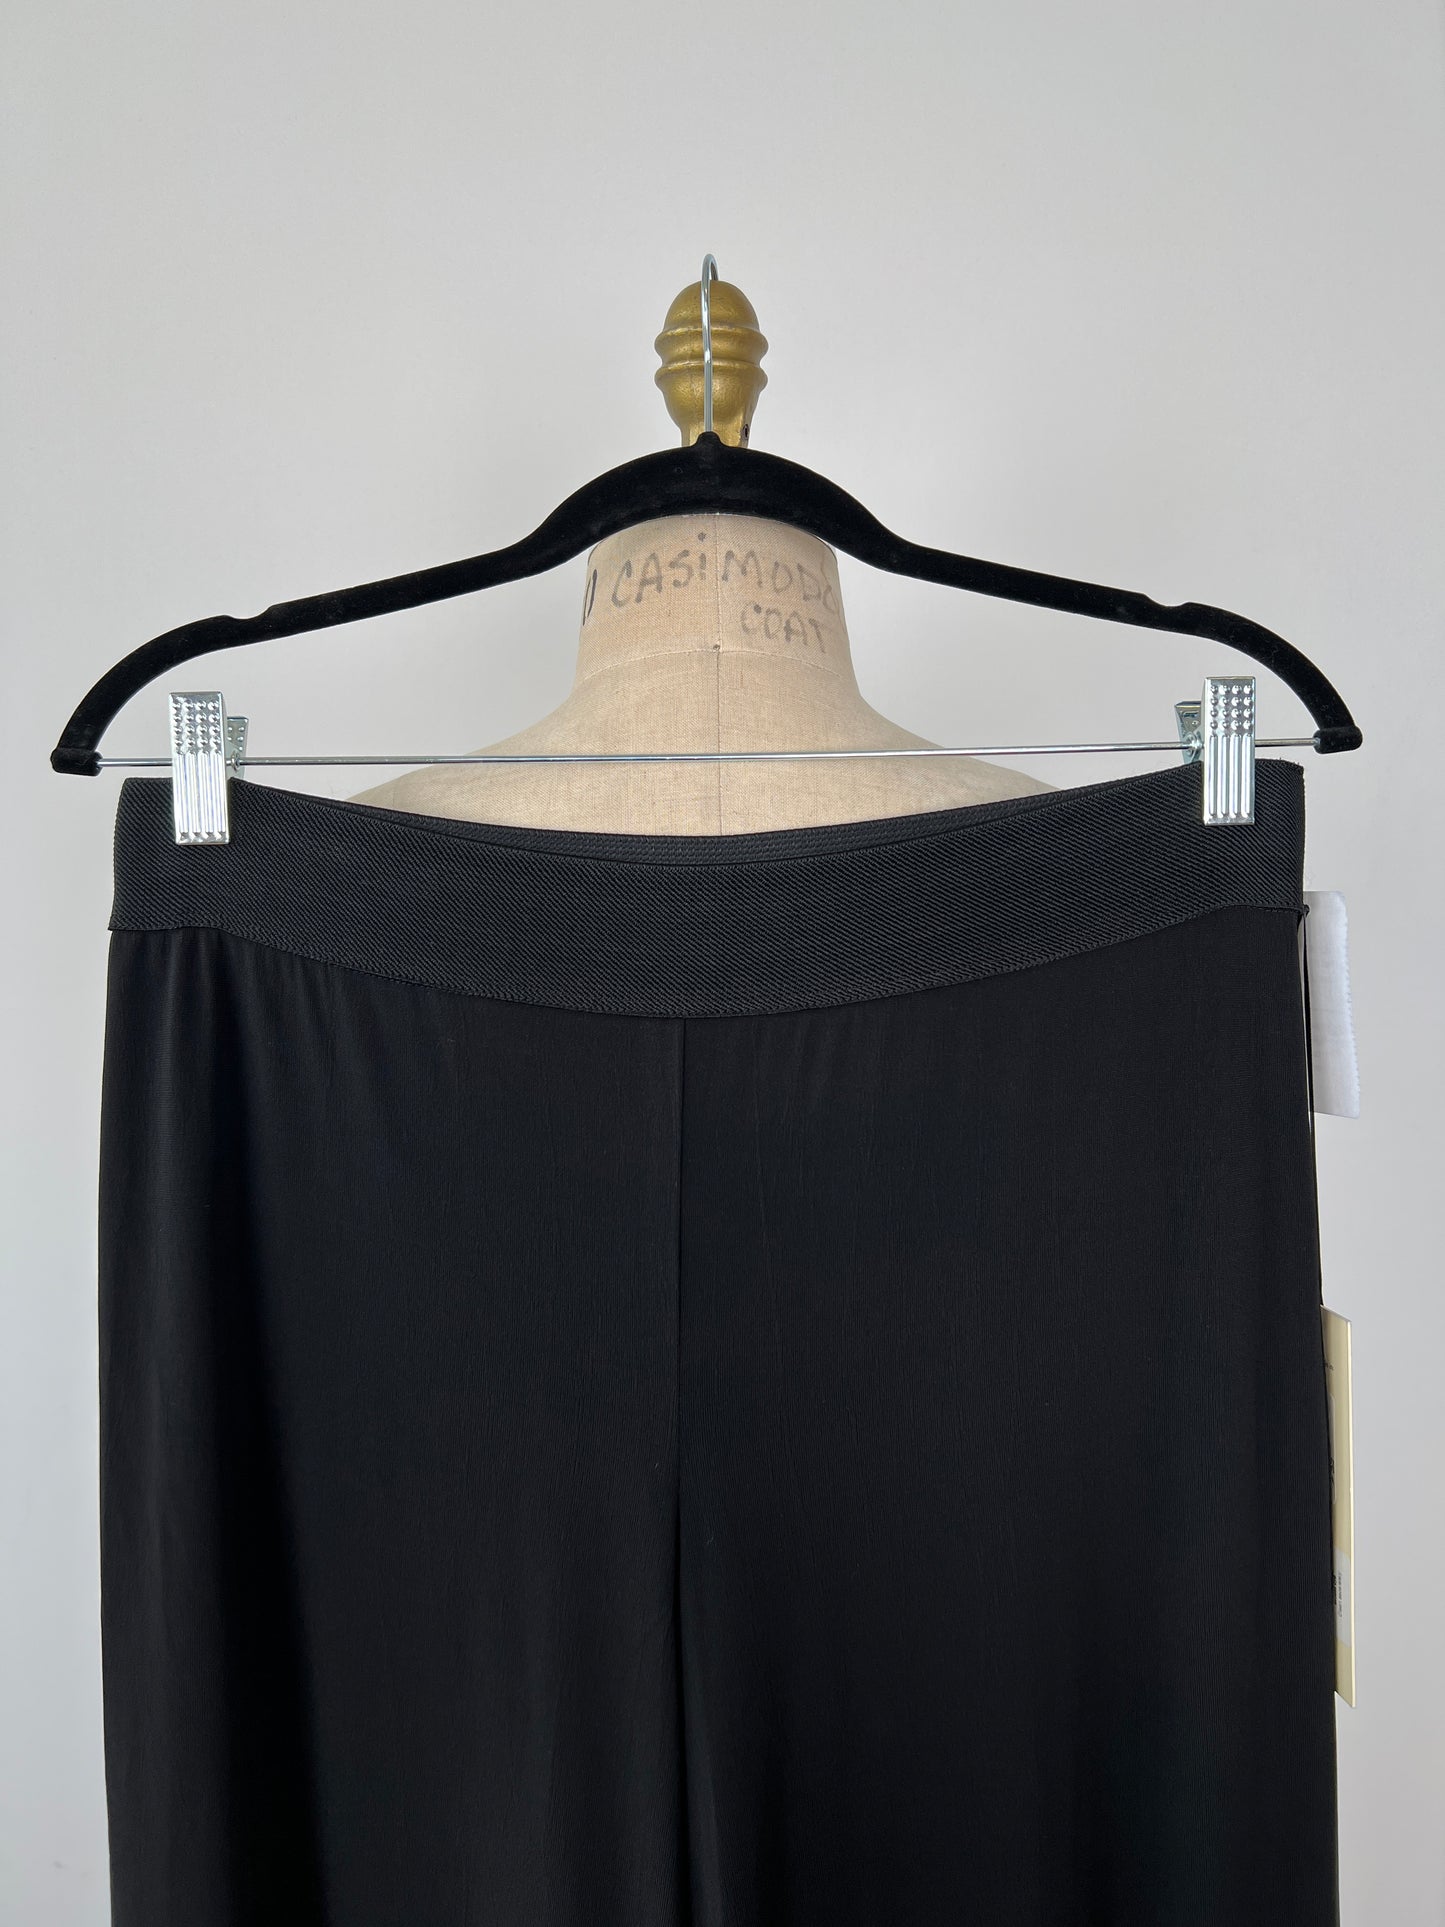 Pantalon corsaire fluide noir à taille élastique (S/M)